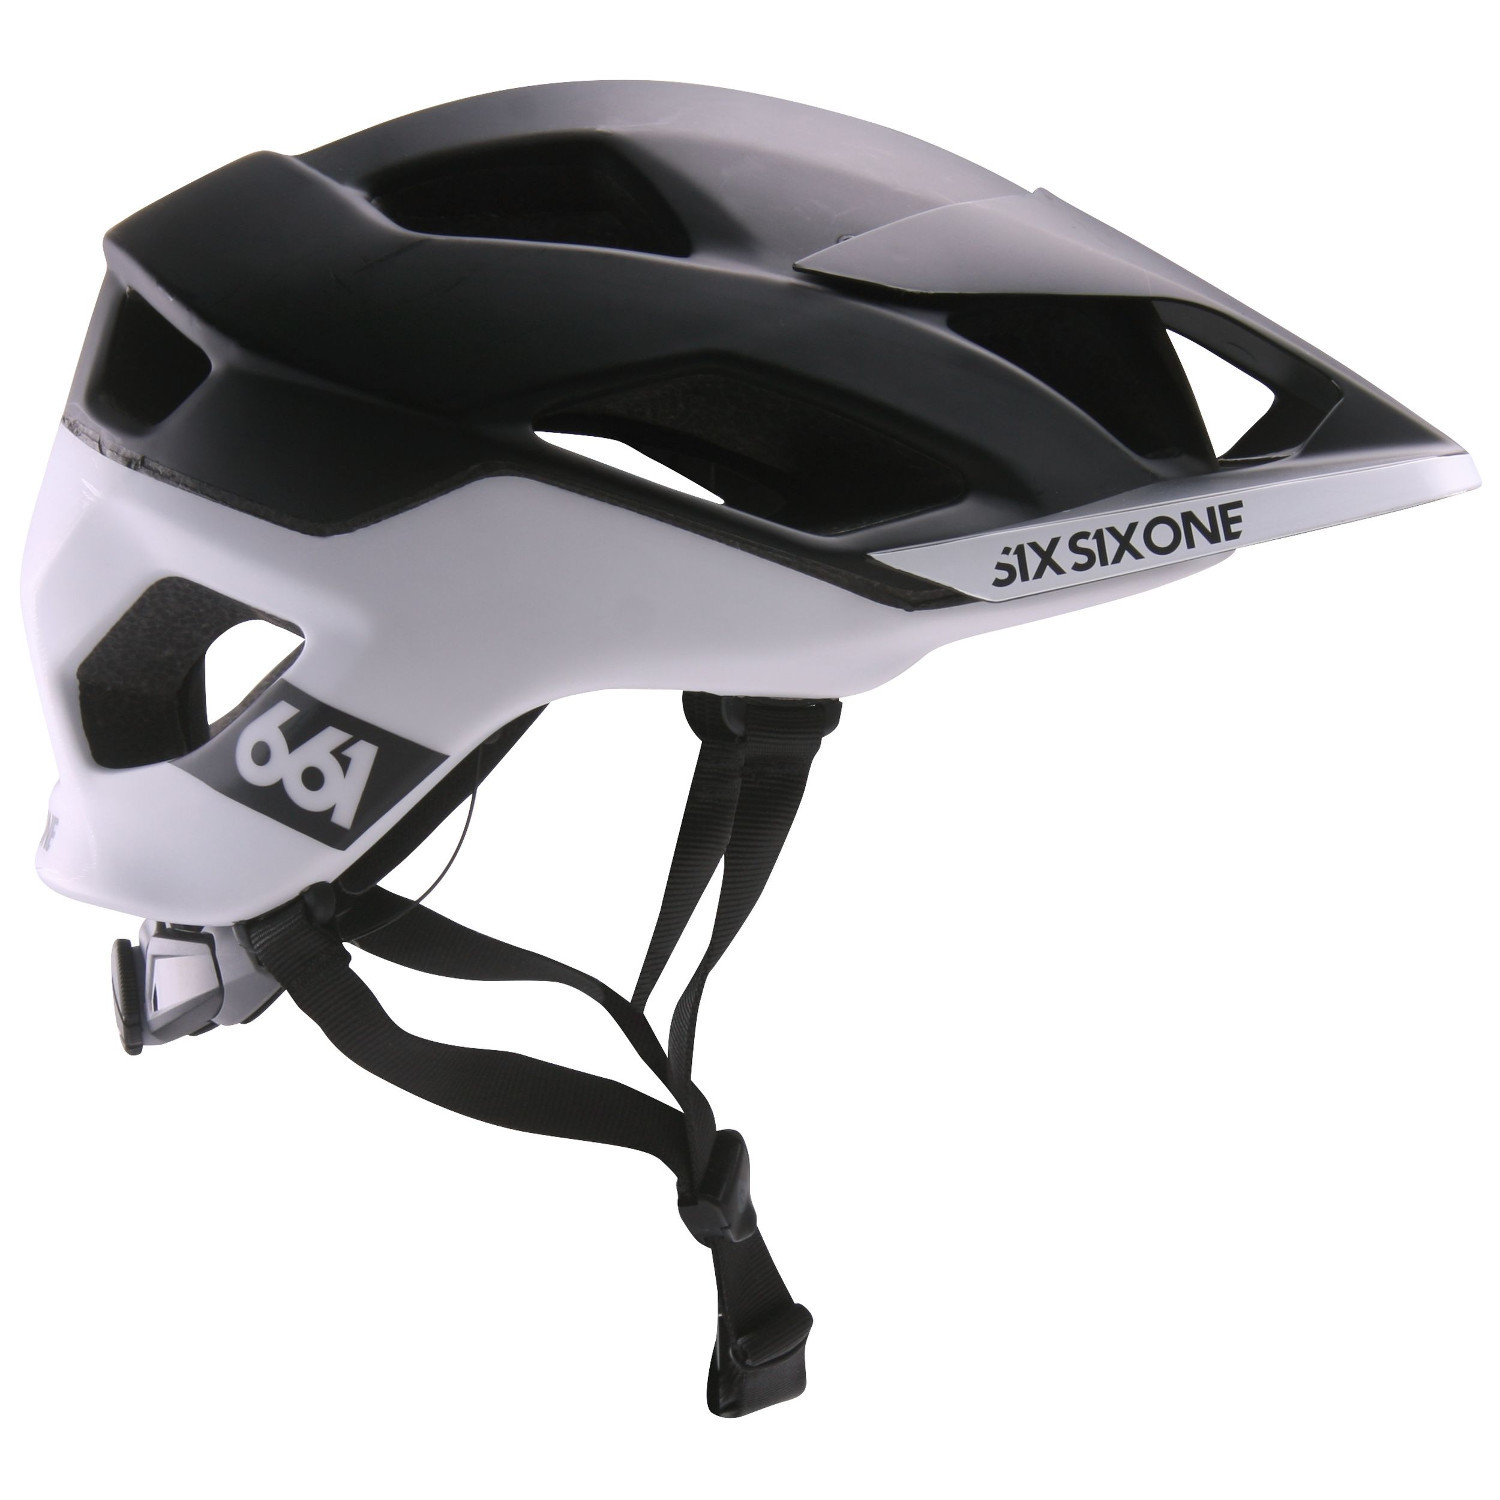 SixSixOne Enduro-MTB Helmet Evo AM Patrol MIPS Black/White